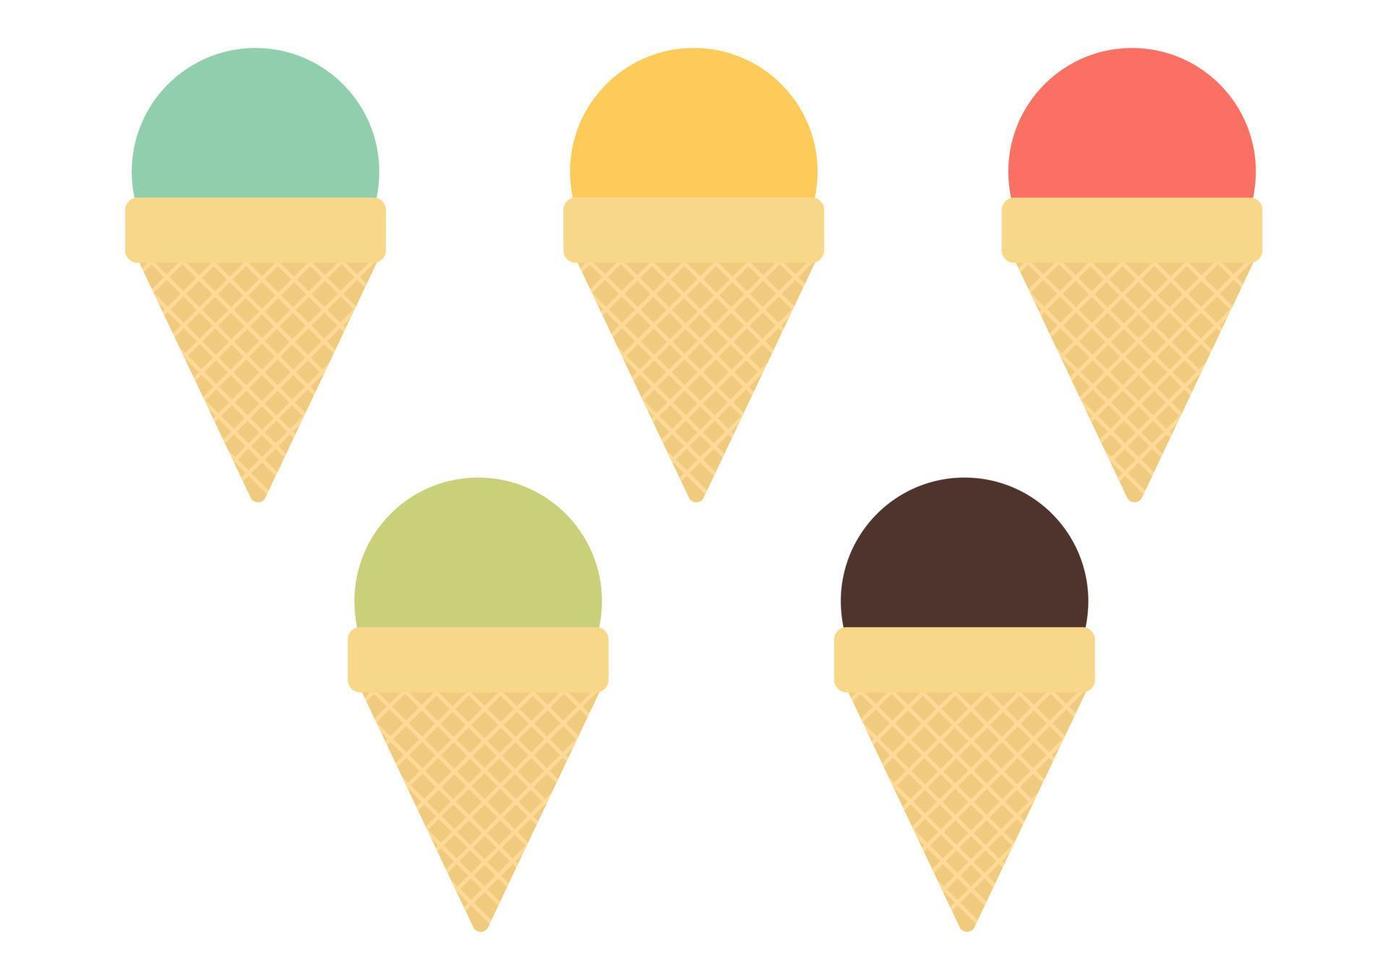 coleção de ilustrações de sorvete com vários sabores e cores vivas vetor